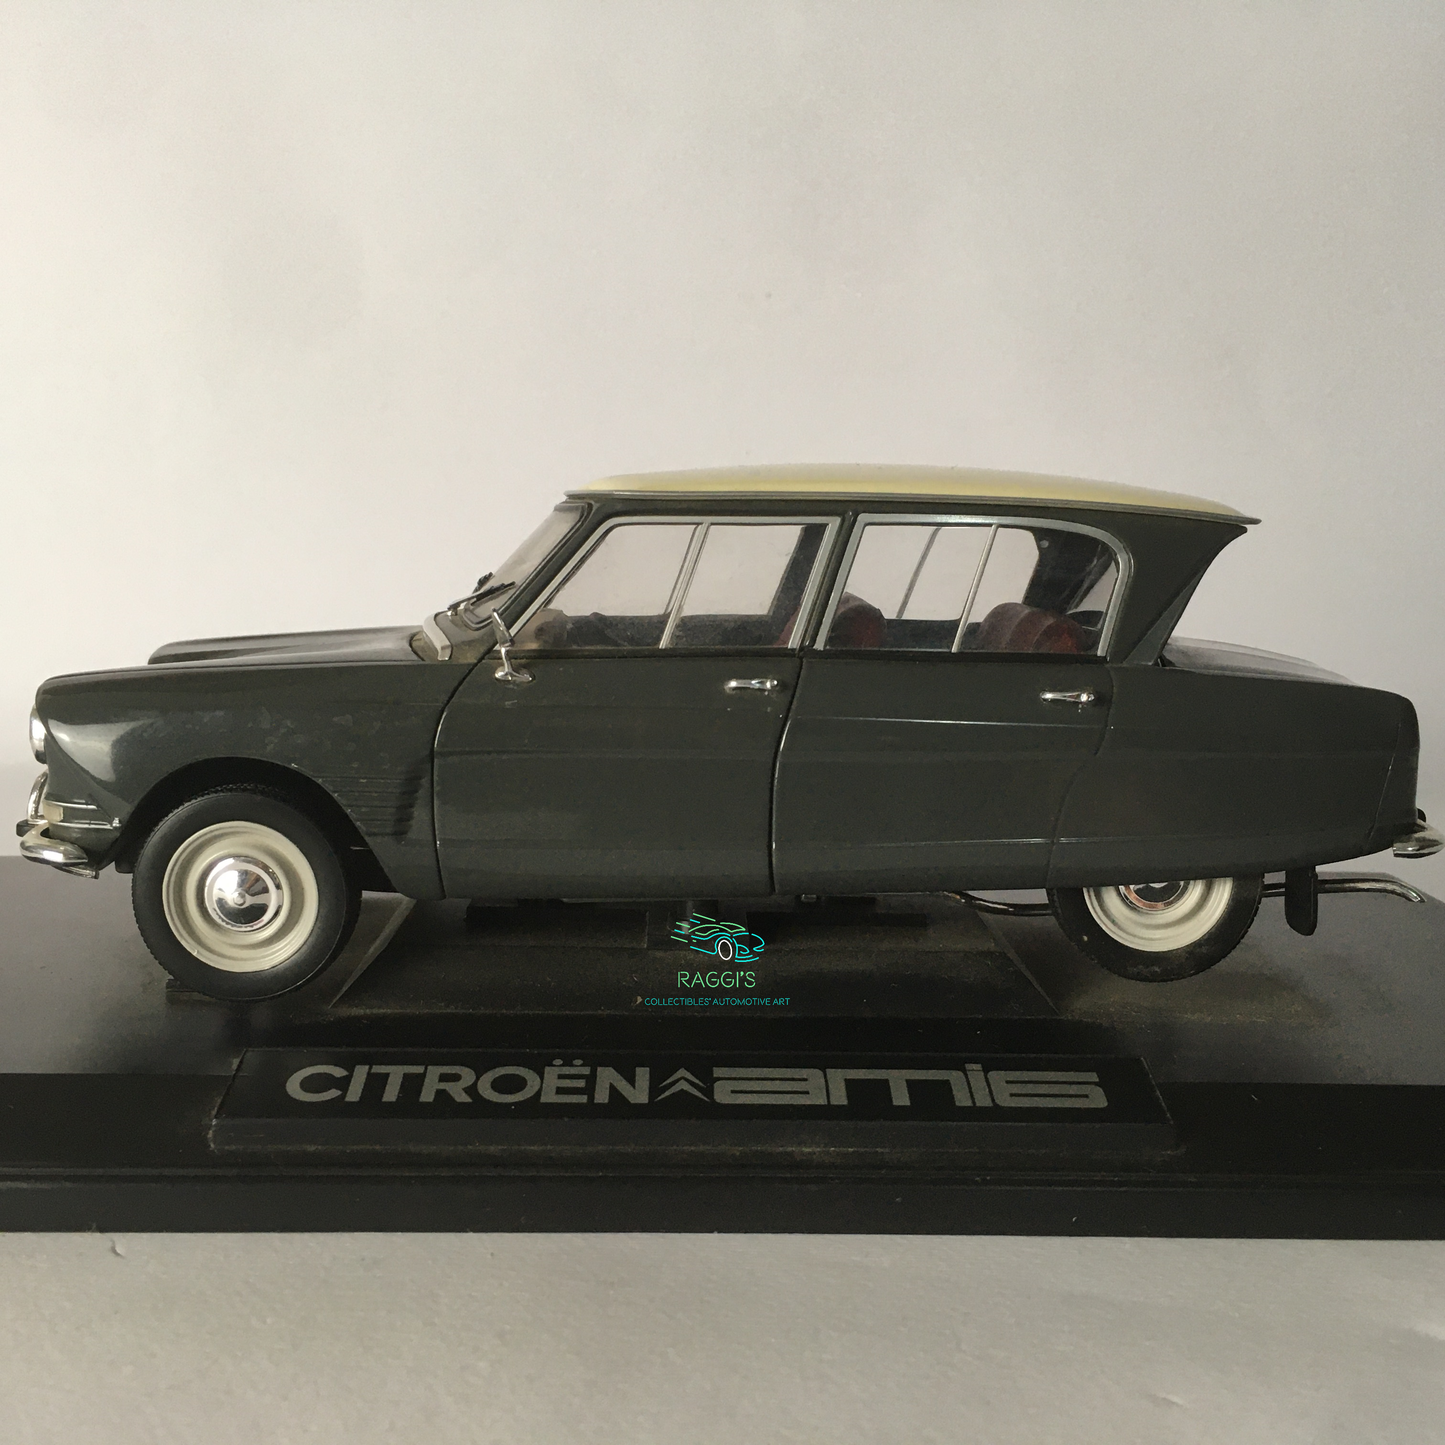 Citroën Norev Citroën Ami 6 Diecast Metal Model 1:18 Scale